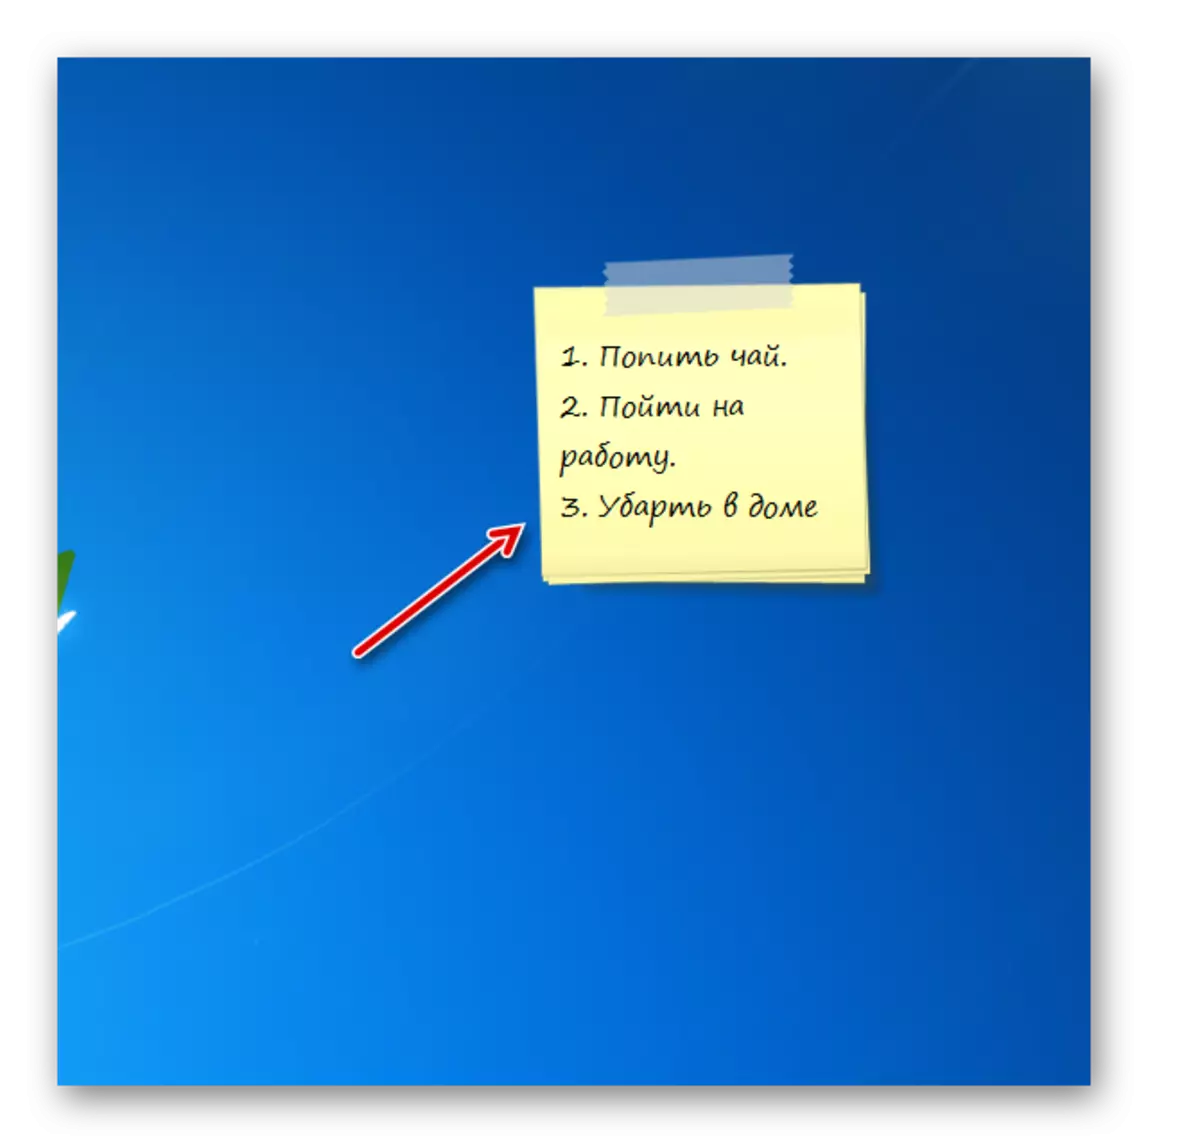 Remake byen nan koòdone nan Khameleyon Notescolour Gadget Gadget sou Desktop a nan Windows 7